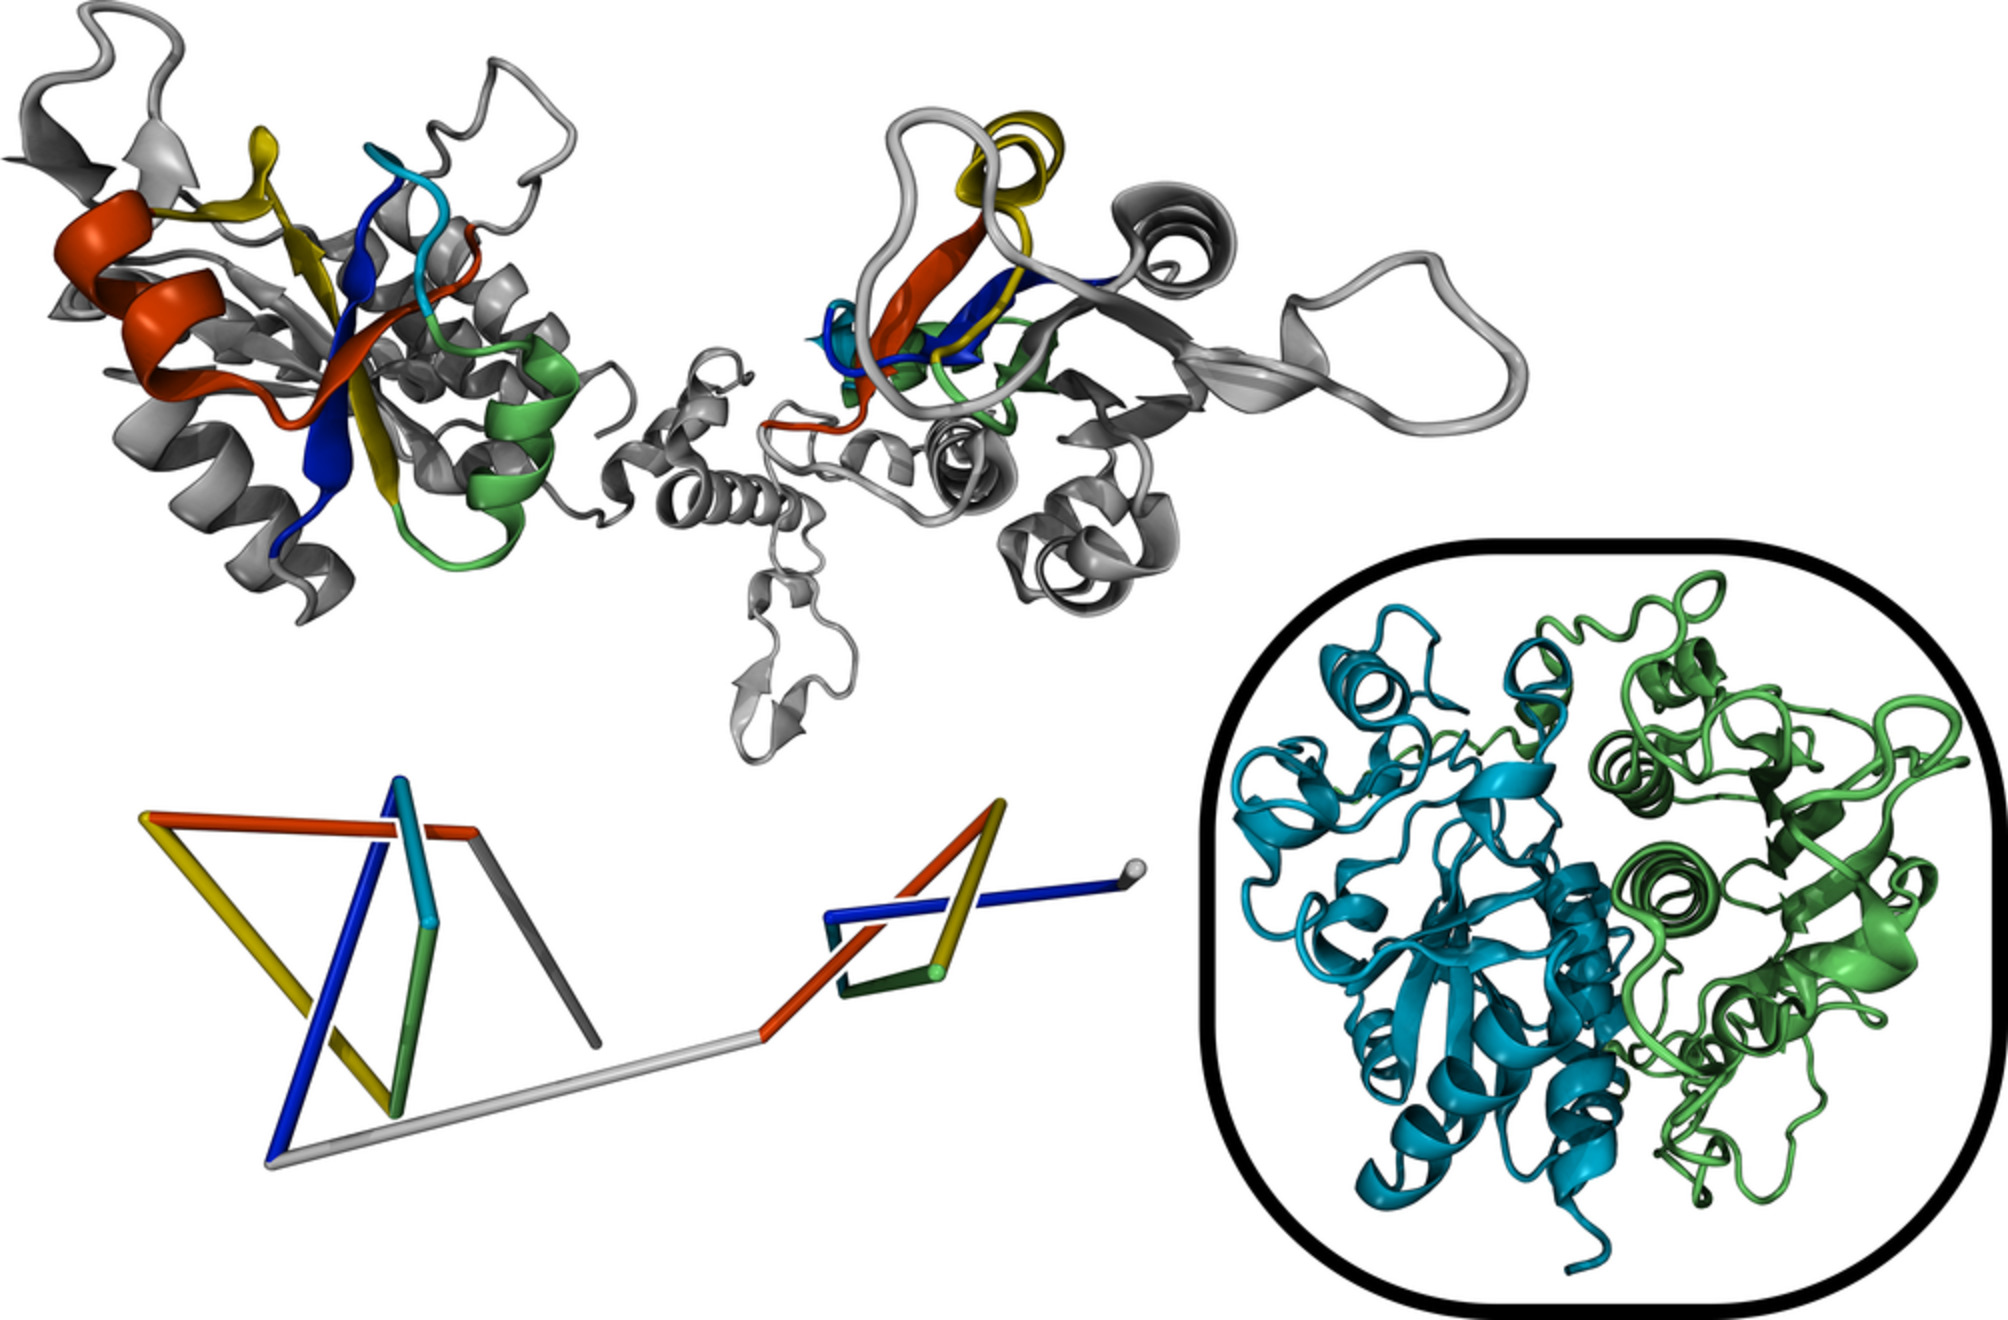 蛋白质Q313J9（甲基转移酶）中六交叉复合结的3D结构（顶部）和简化表示（底部）